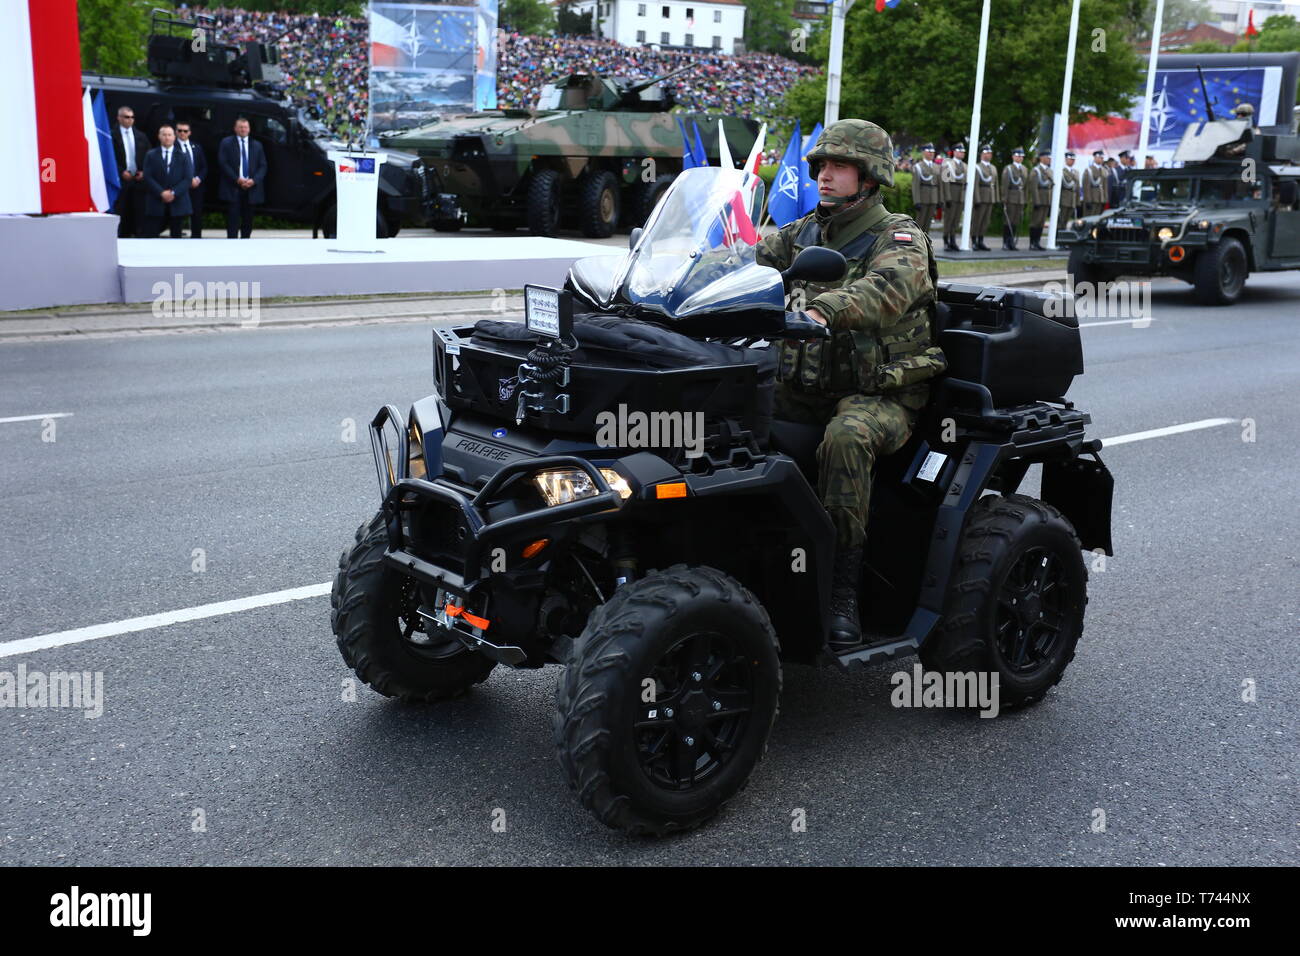 Polen: Tanks, ATVs, SUVs und Artillerie der Polnischen Armee rollen an militärischen Parade während der Feierlichkeiten der Verfassung. Stockfoto